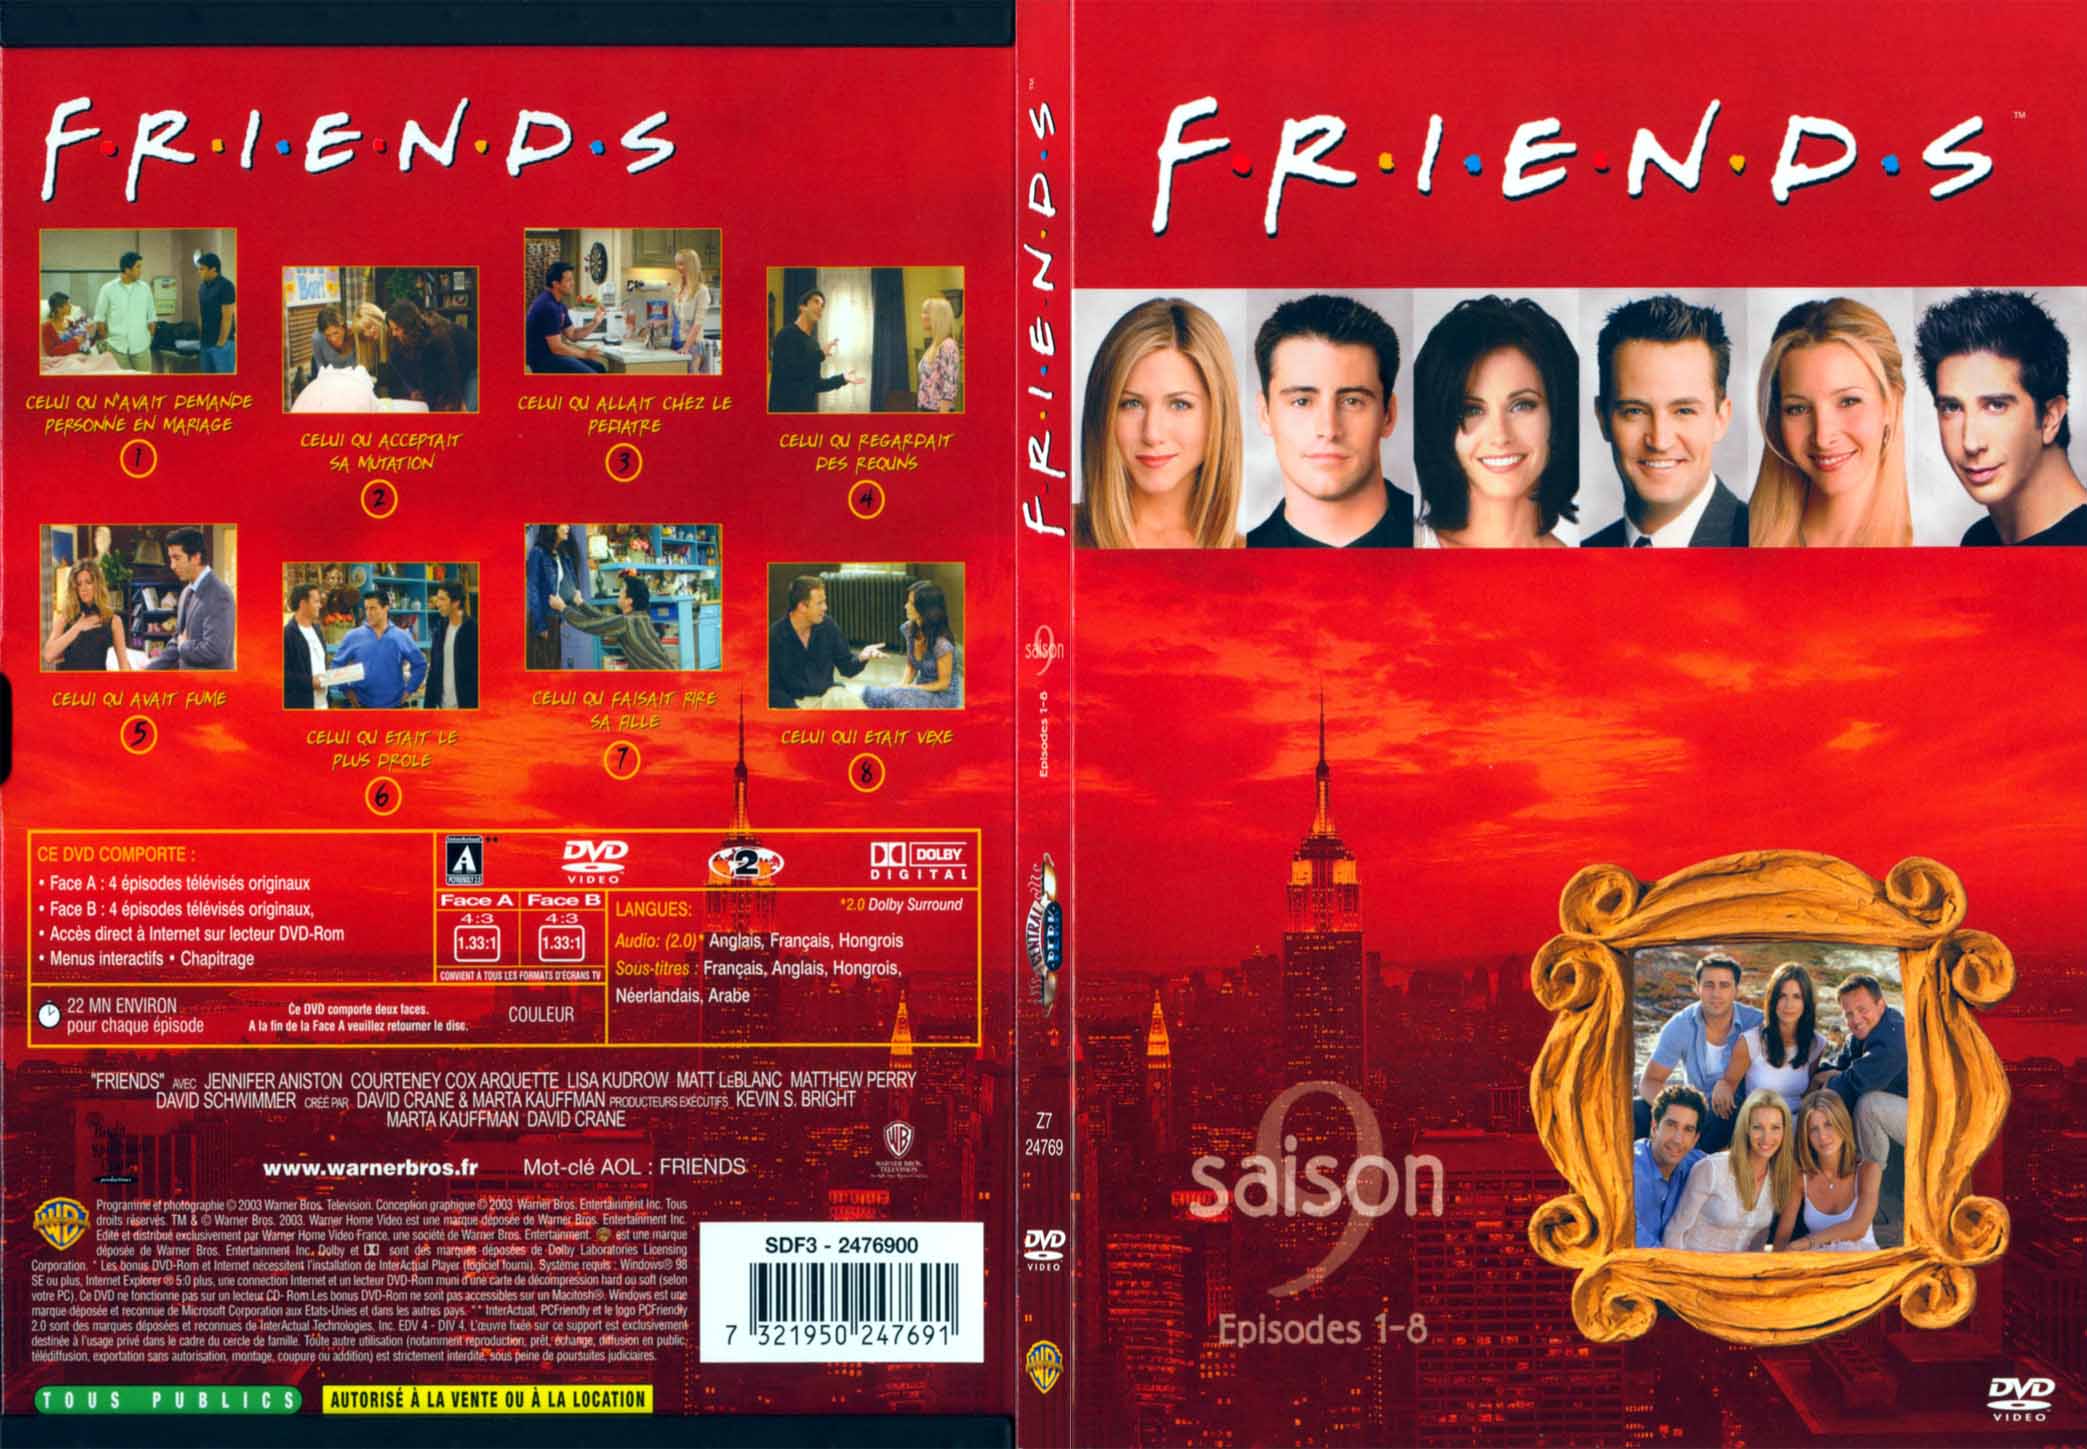 Jaquette DVD Friends saison 9 dvd 1 - SLIM